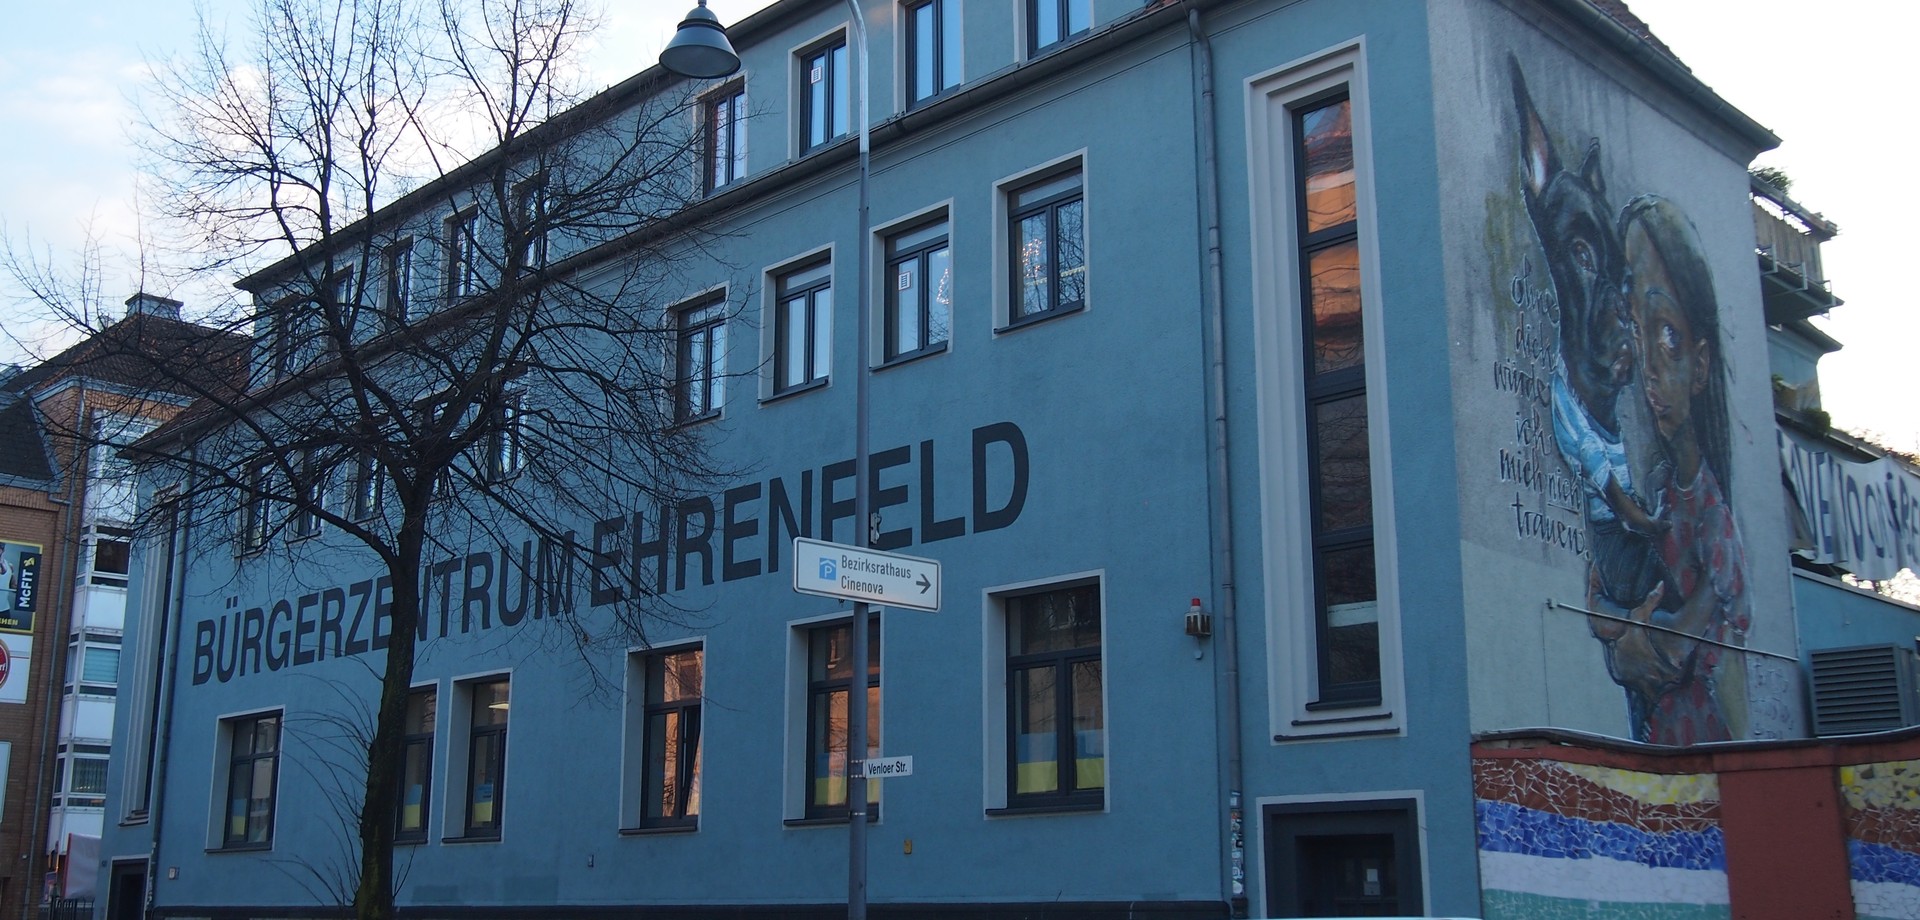 Ein Gebäude auf dem in großen Buchstaben Bürgerzentrum Ehrenfeld steht. Auf der Seitenwand ist ein großes Graffiti von einem Mädchen und ihrem Hund zu sehen.